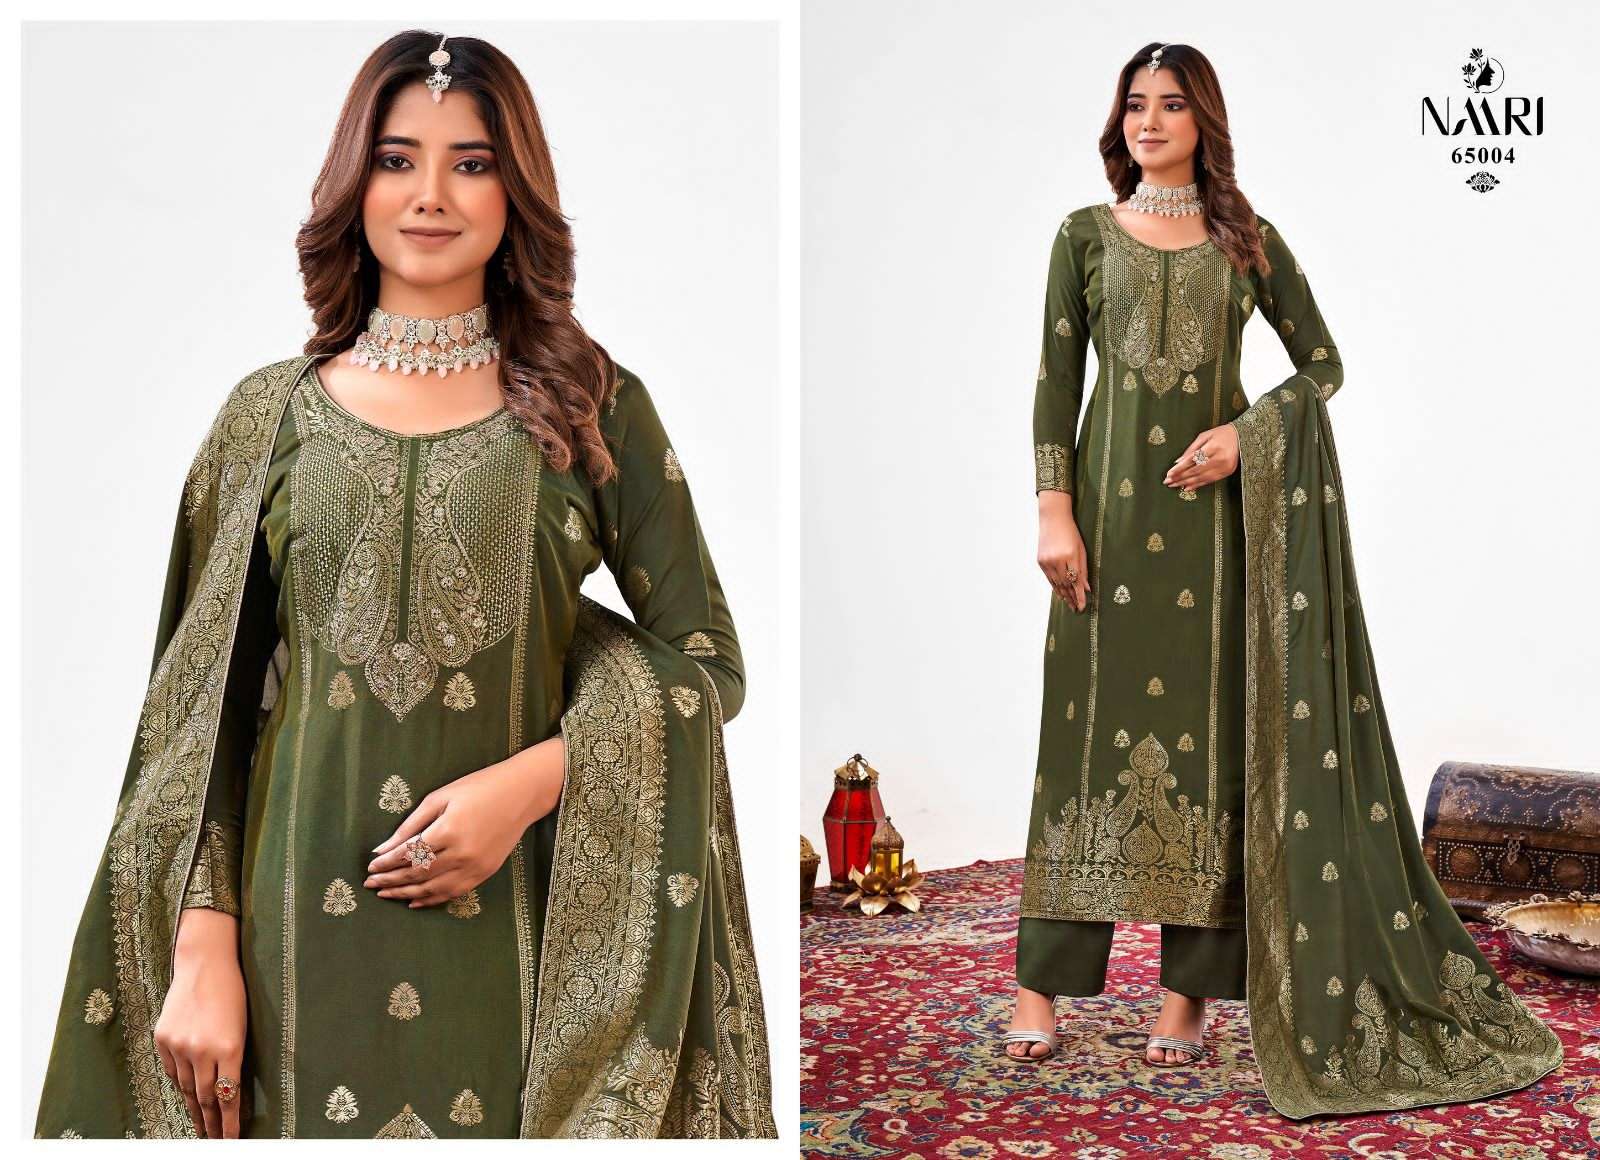 naari nyasa 65001-65004 series muslin dola jaquard salwar suits collection at wholesale surat